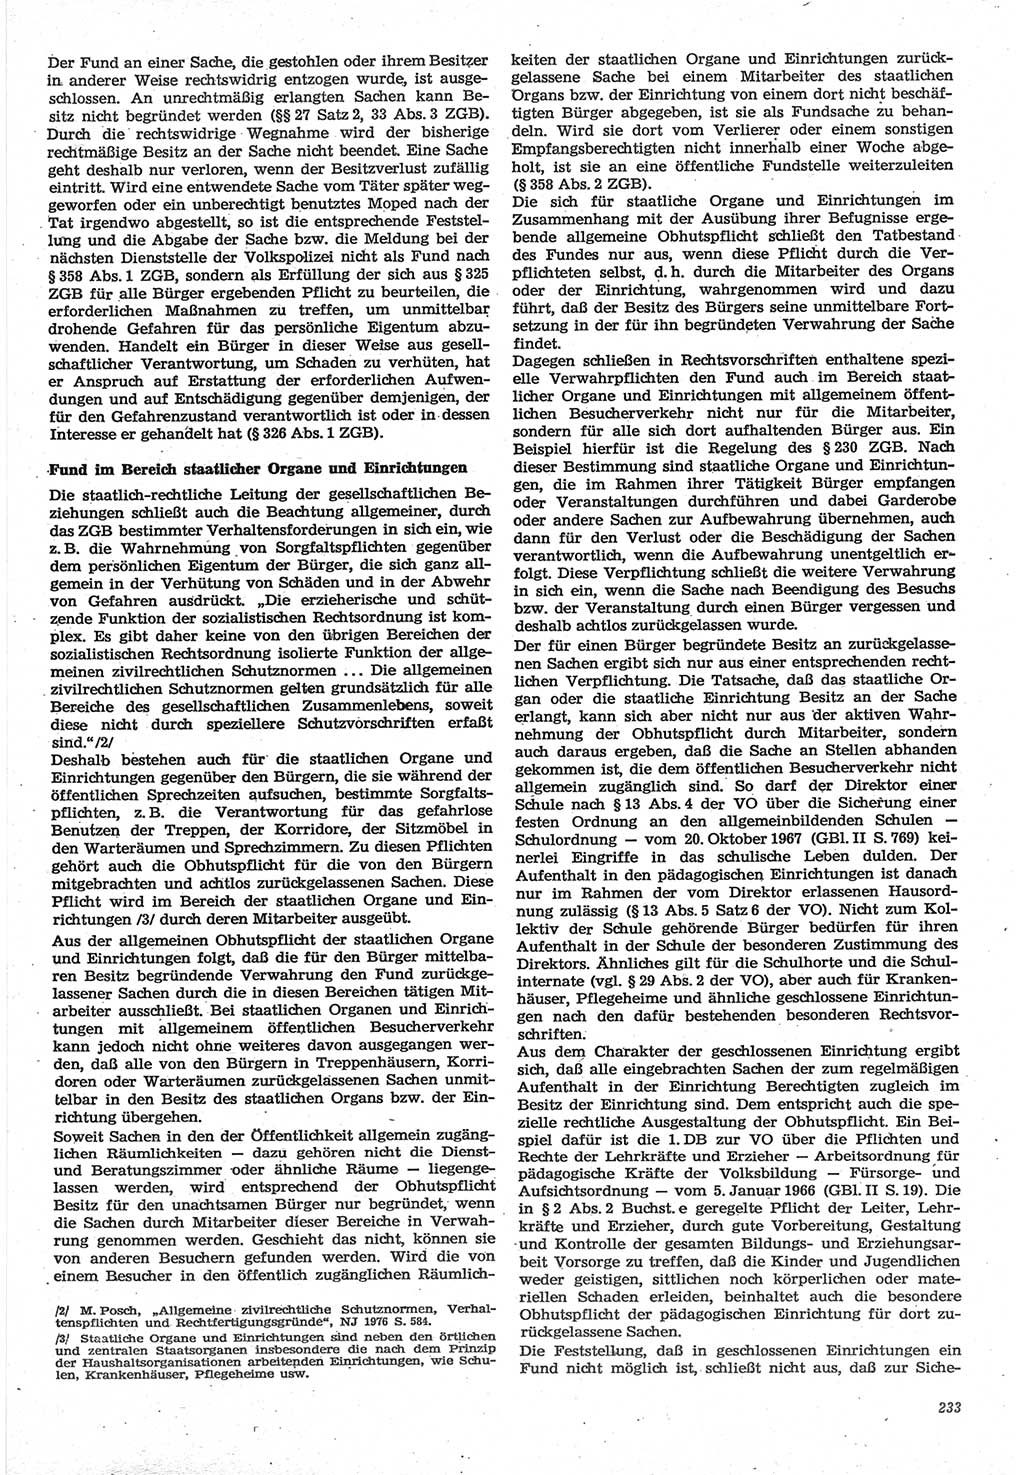 Neue Justiz (NJ), Zeitschrift für Recht und Rechtswissenschaft-Zeitschrift, sozialistisches Recht und Gesetzlichkeit, 31. Jahrgang 1977, Seite 233 (NJ DDR 1977, S. 233)